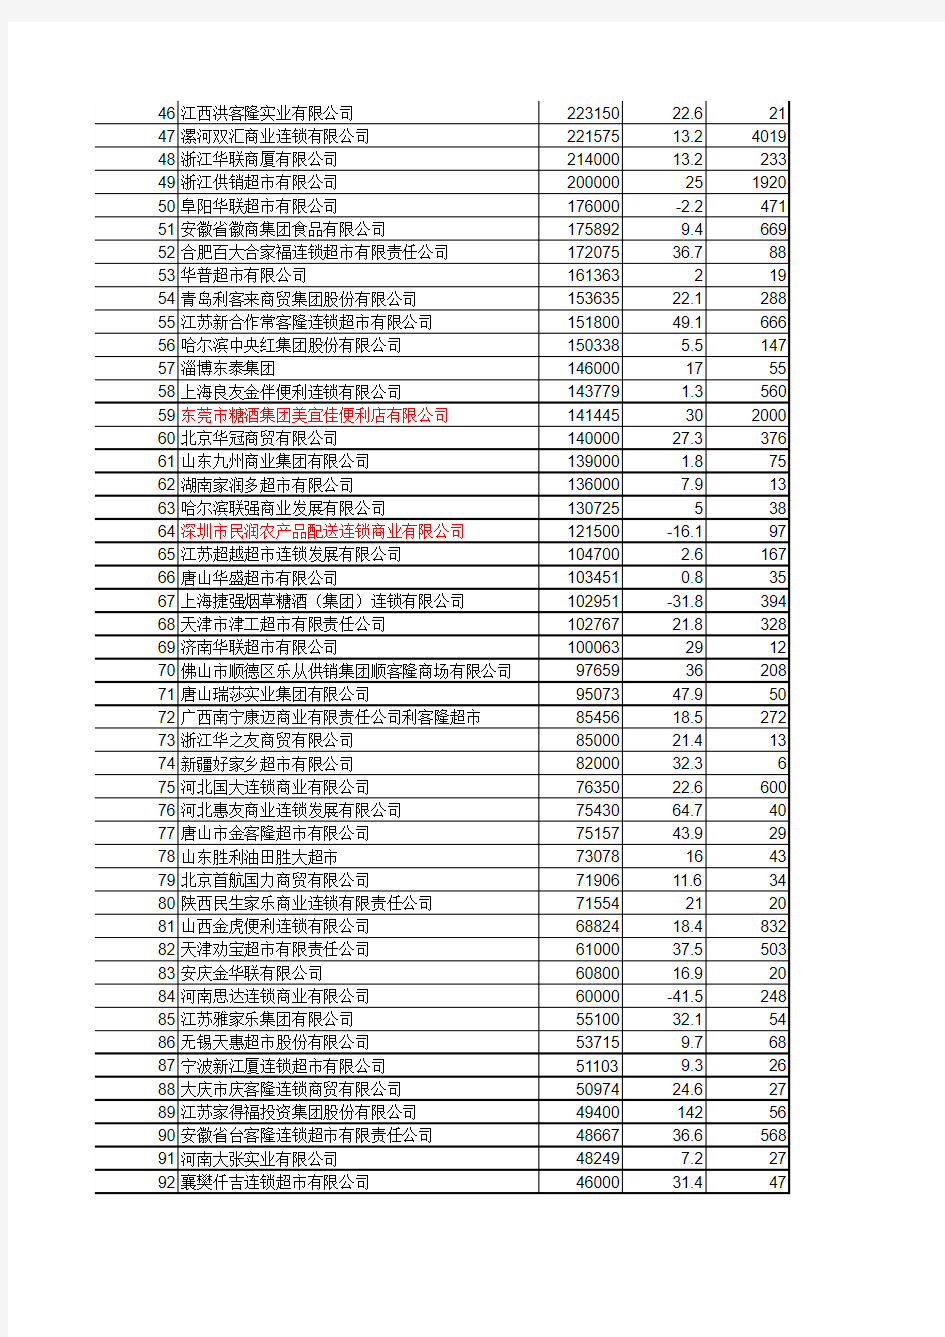 中国前100位连锁超市排名、门店及具体销量.xls